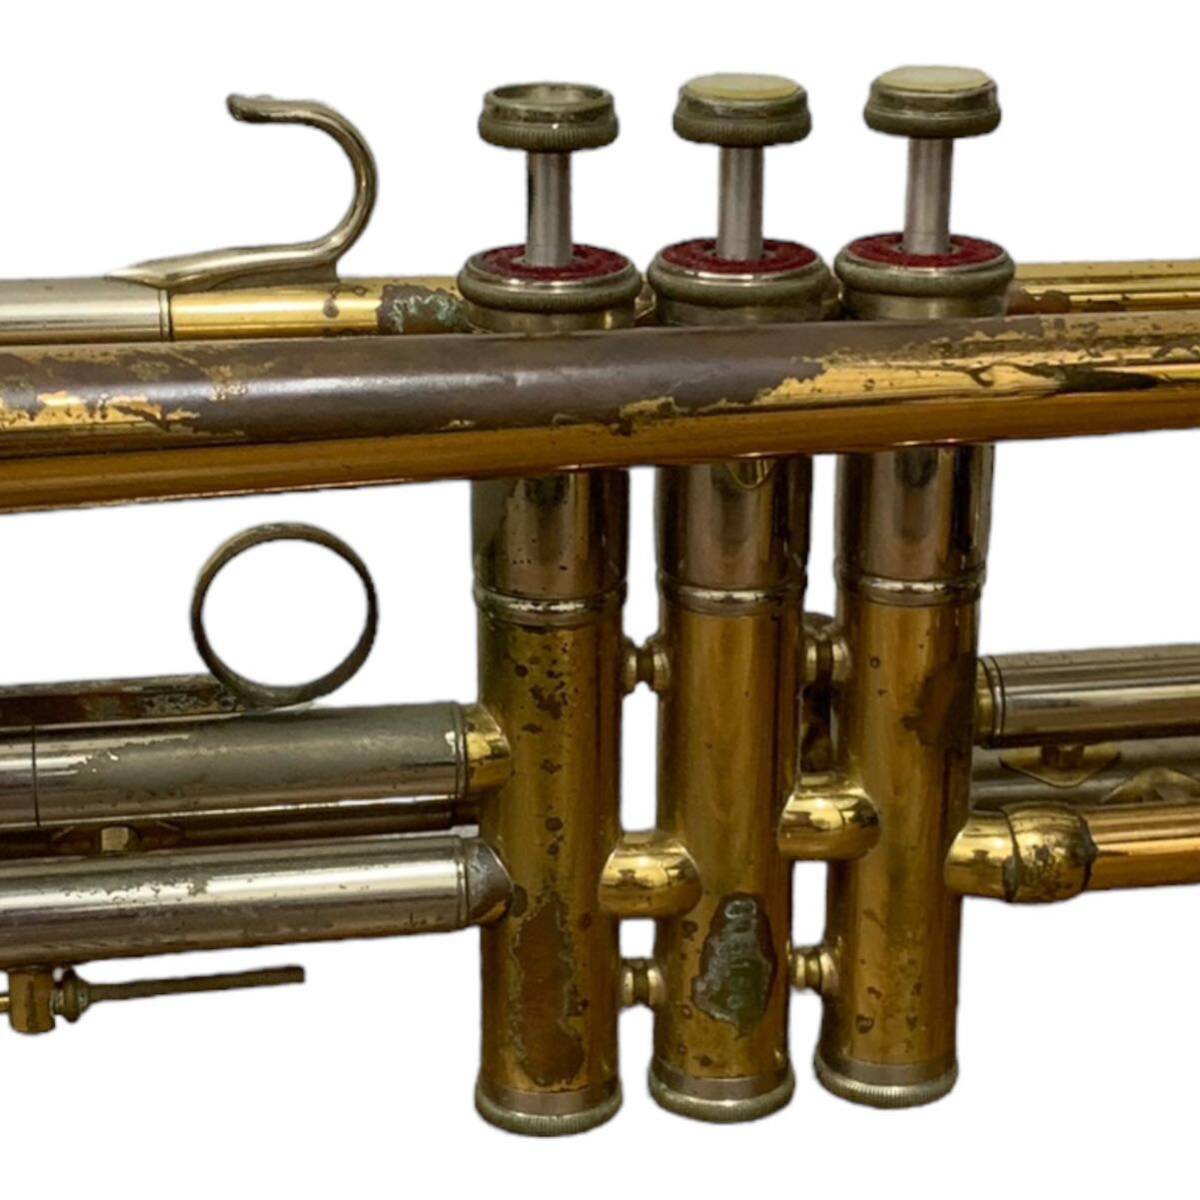 Nikkan Trumpet Imperiale день труба труба imperial подробности неизвестен работоспособность не проверялась музыкальные инструменты 